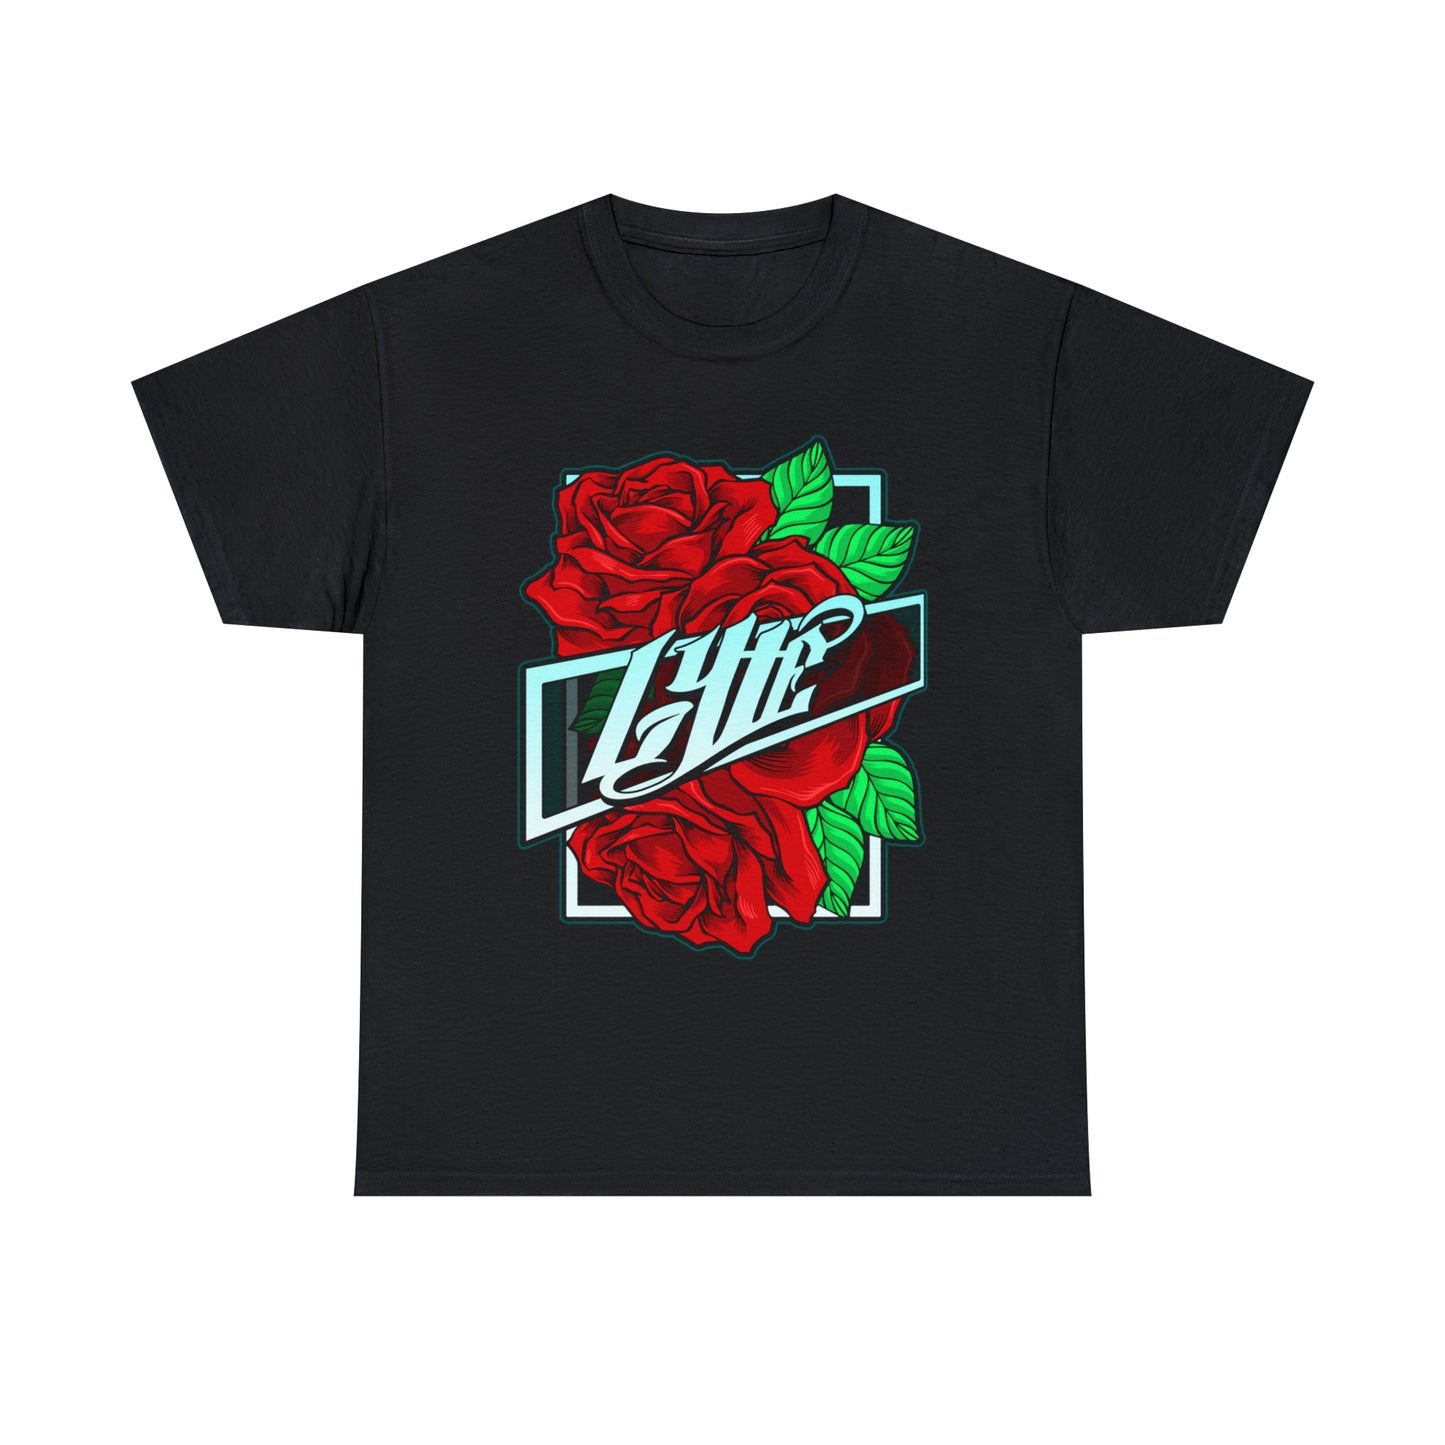 Lyte "Rose Bud" Logo T-Shirt